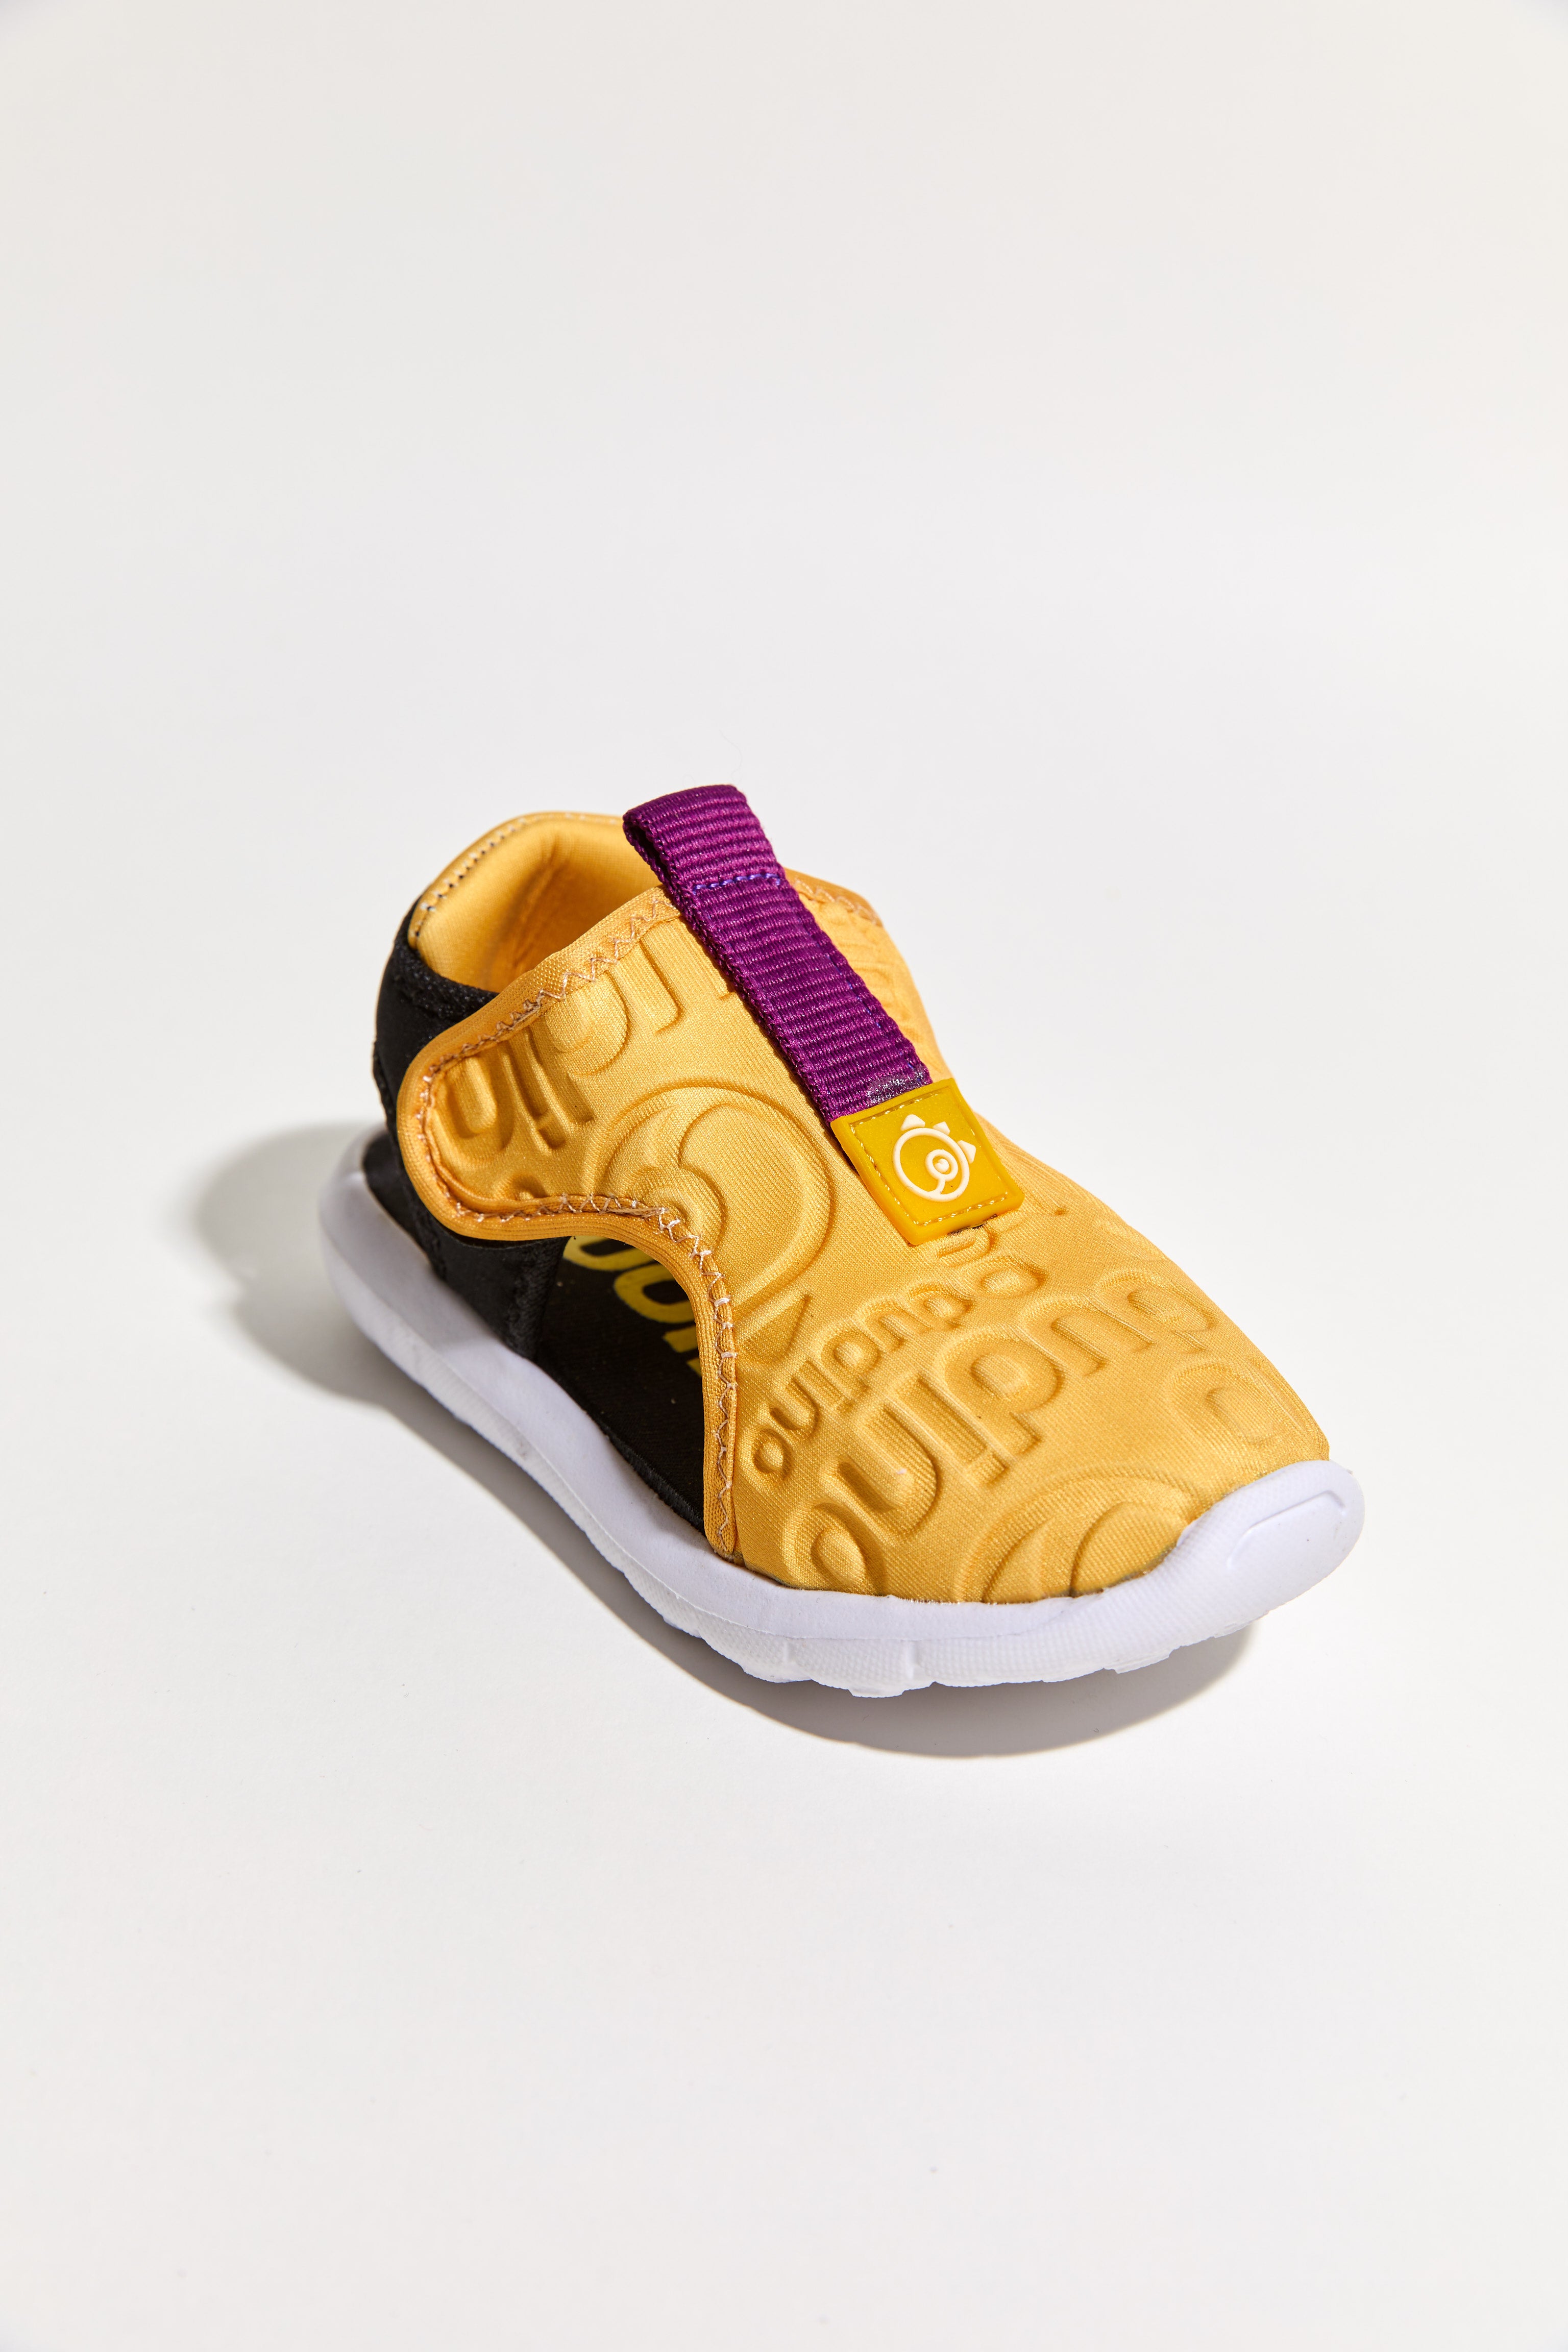 Shell Kolay Giyilebilir Çocuk Ayakkabısı